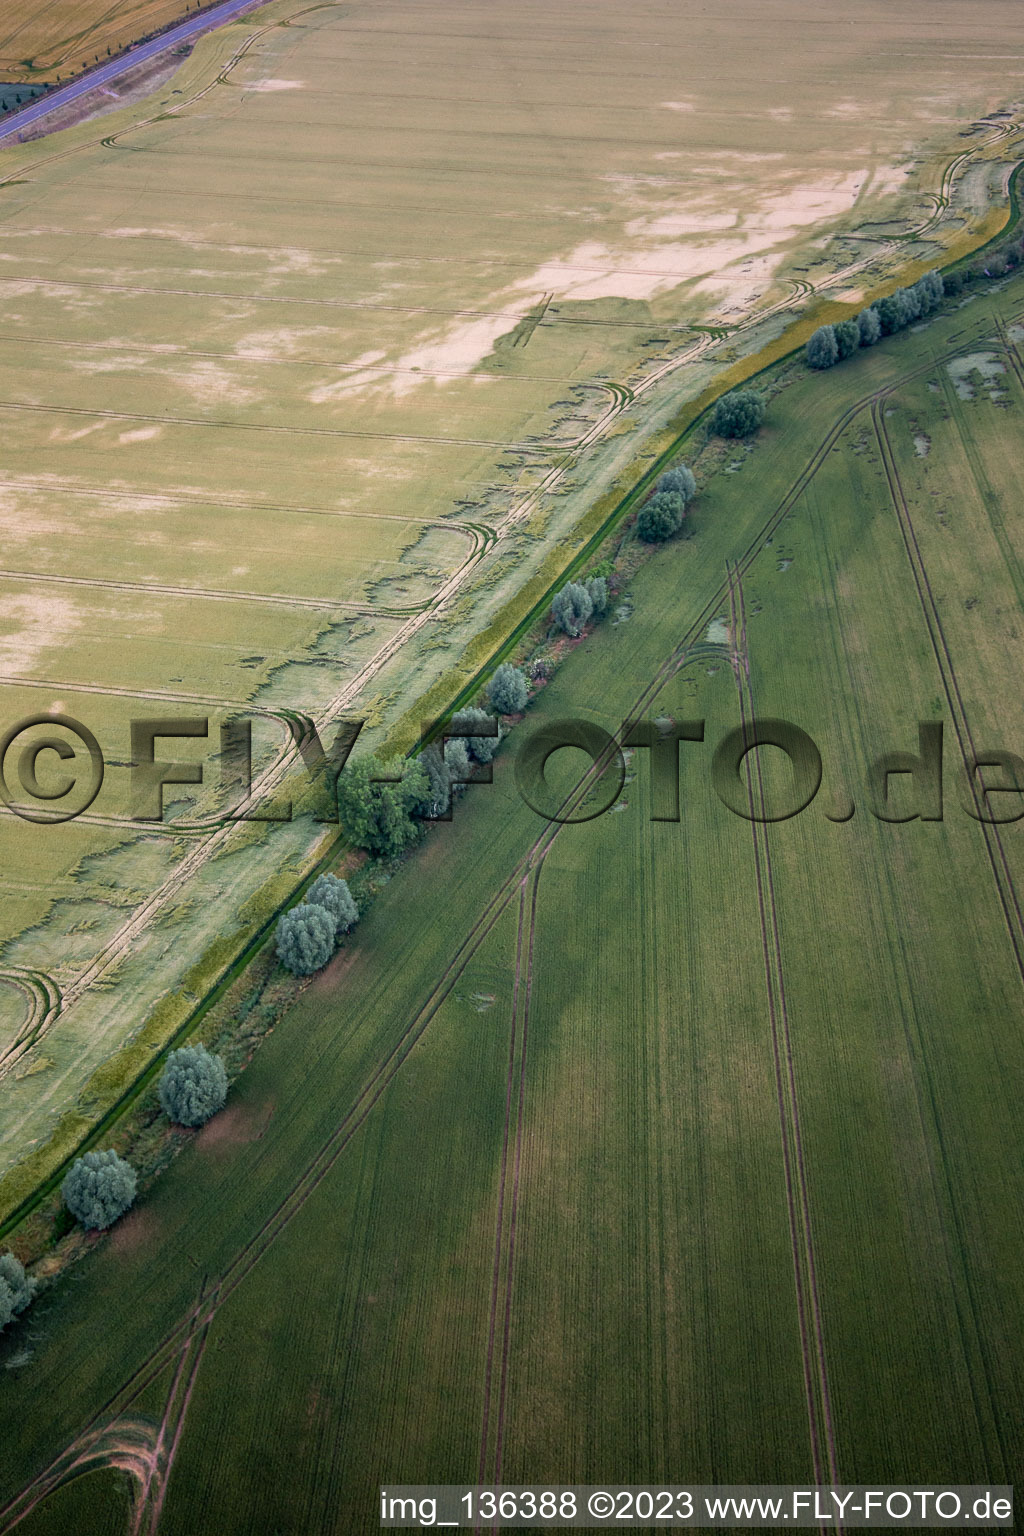 Vue aérienne de Cours du ruisseau Getel à le quartier Radisleben in Ballenstedt dans le département Saxe-Anhalt, Allemagne